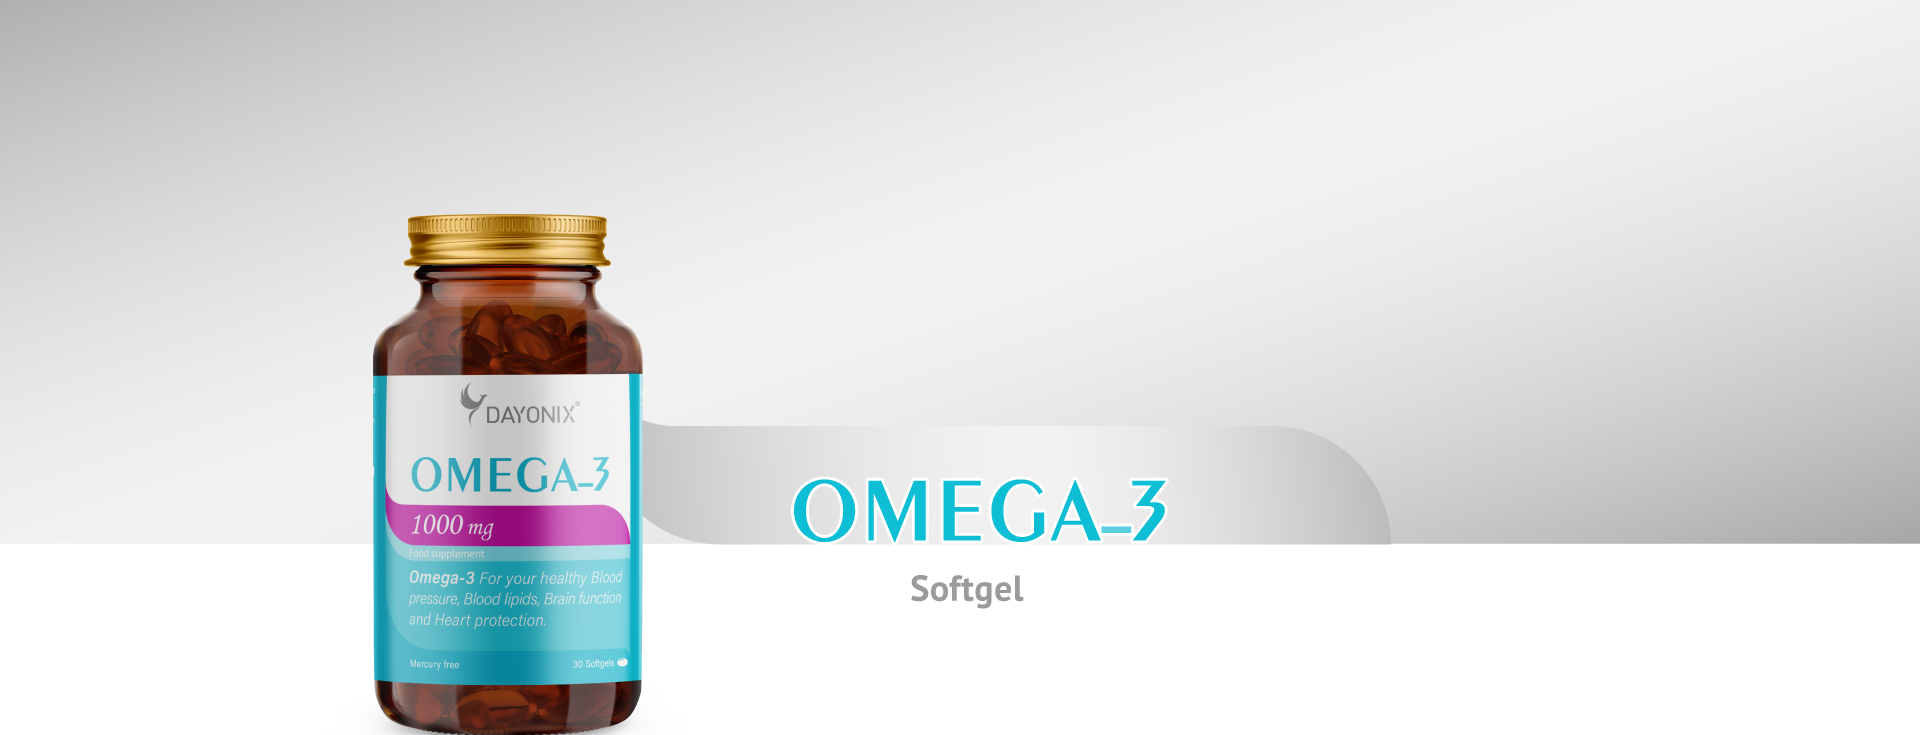 Omega-3-banner